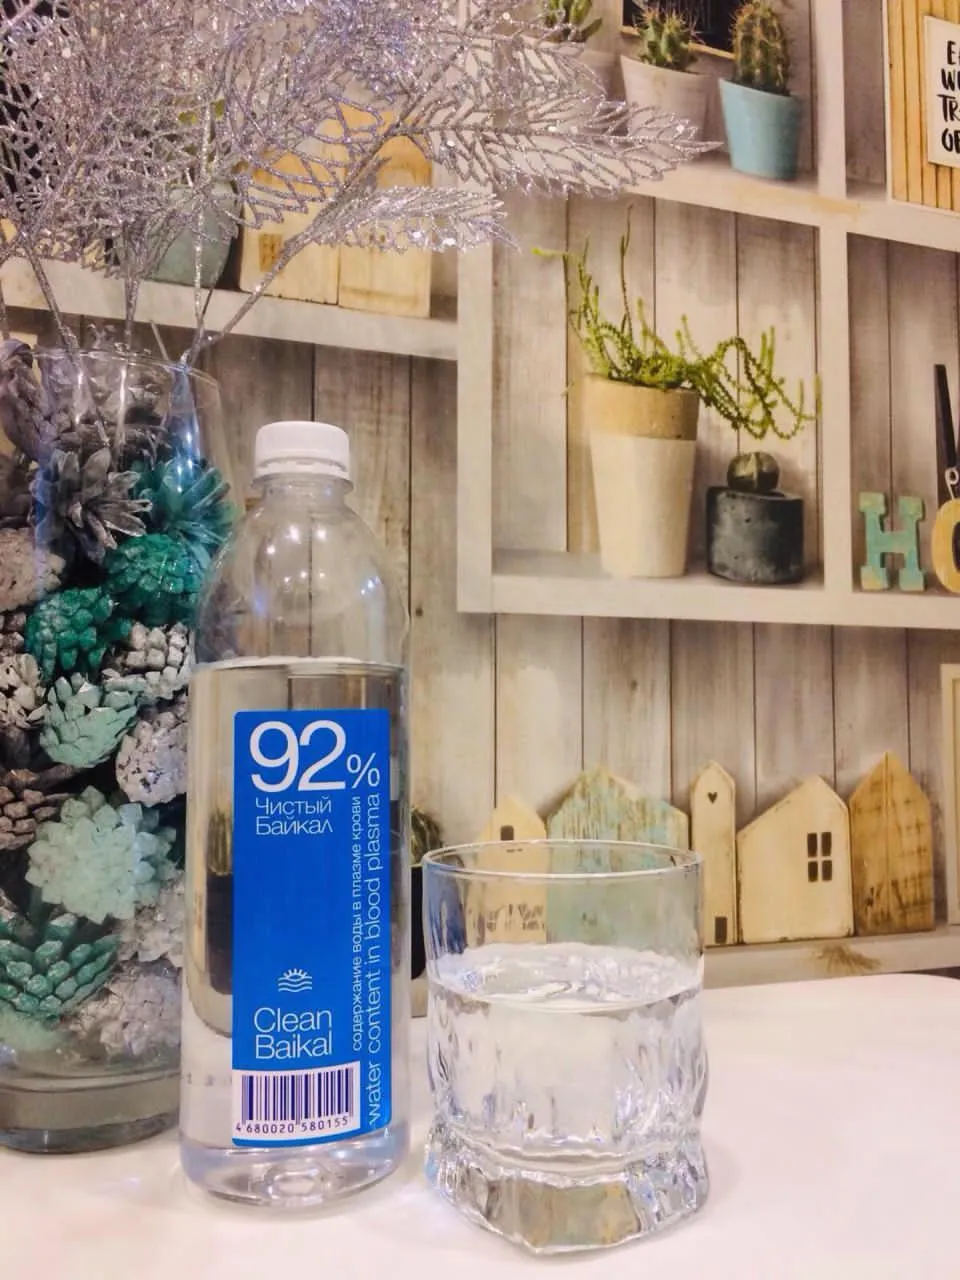 фотография продукта Питьевая вода "Чистый Байкал"